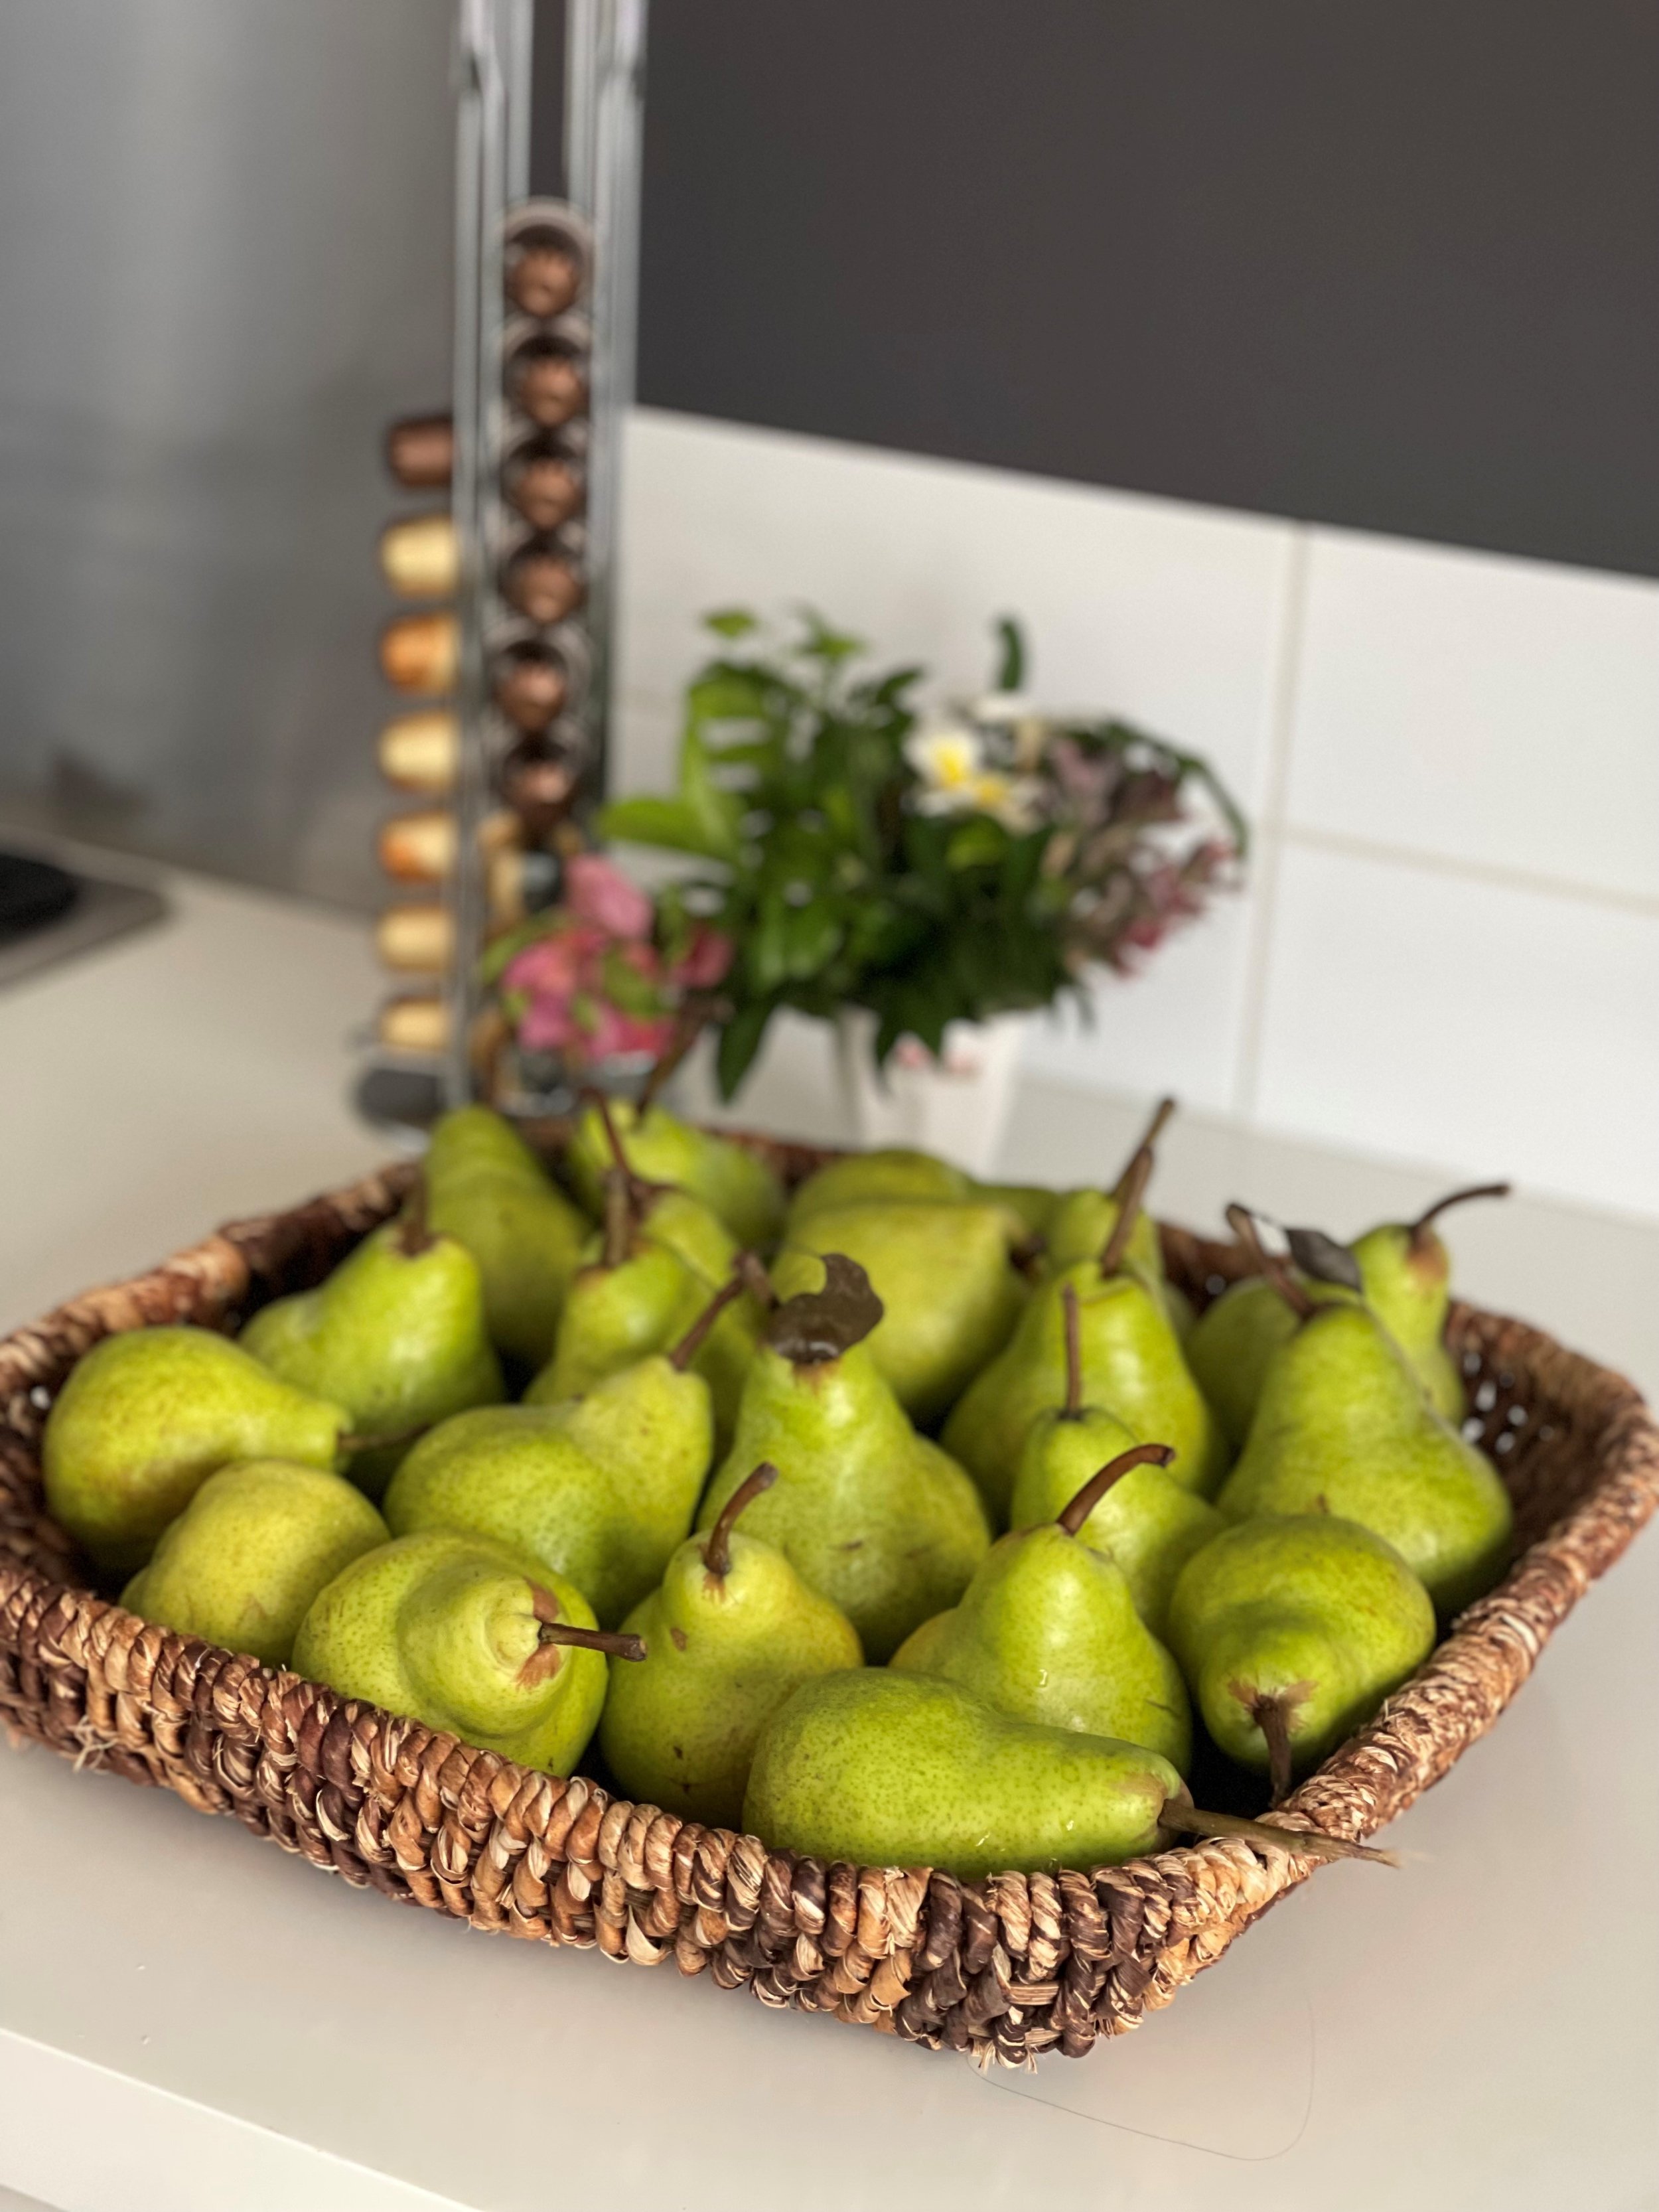 Pear in my kitchen.jpg